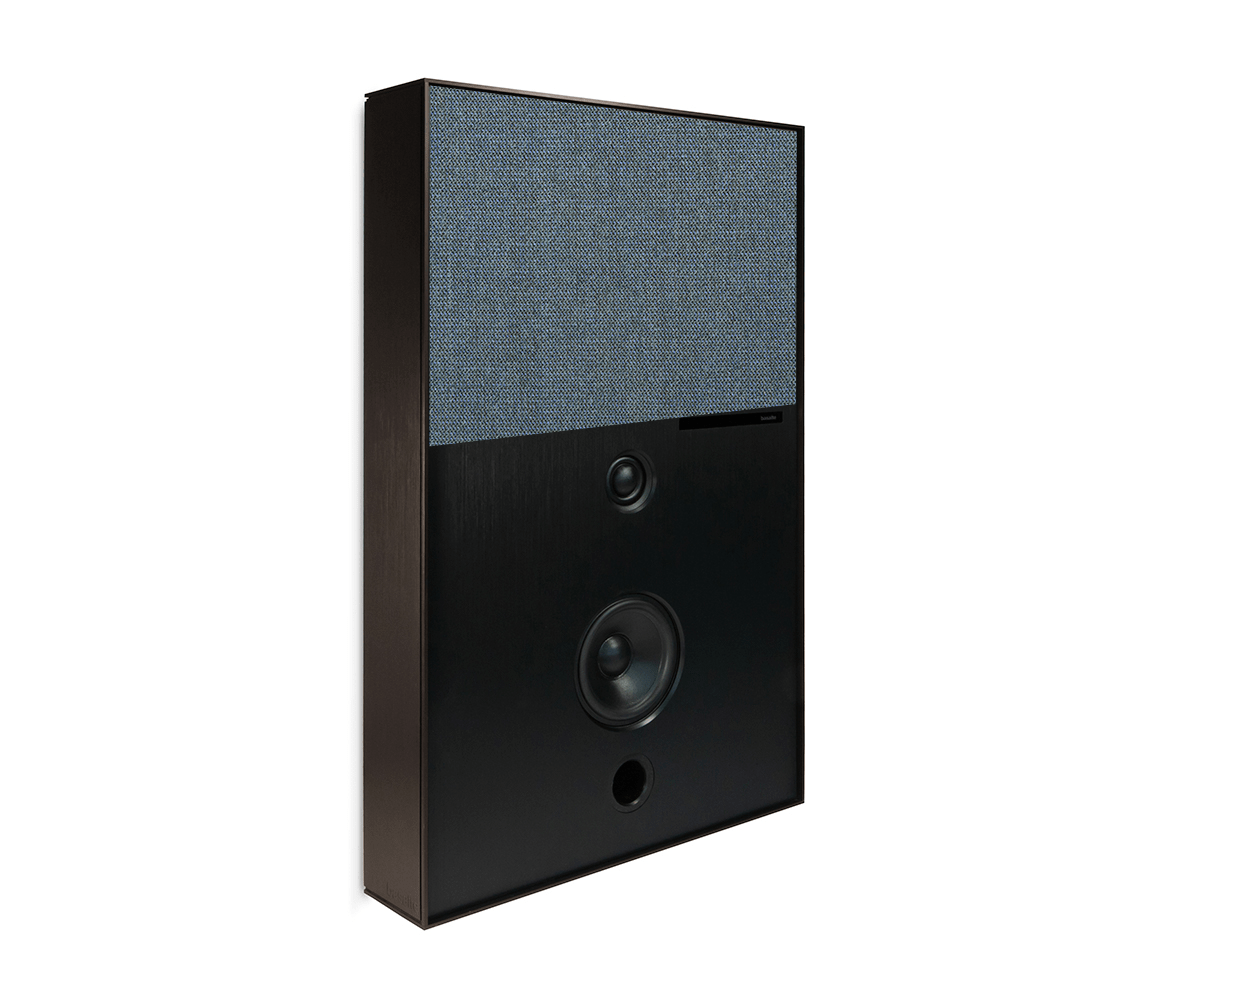 bronze and light blue aalto d3 active speaker